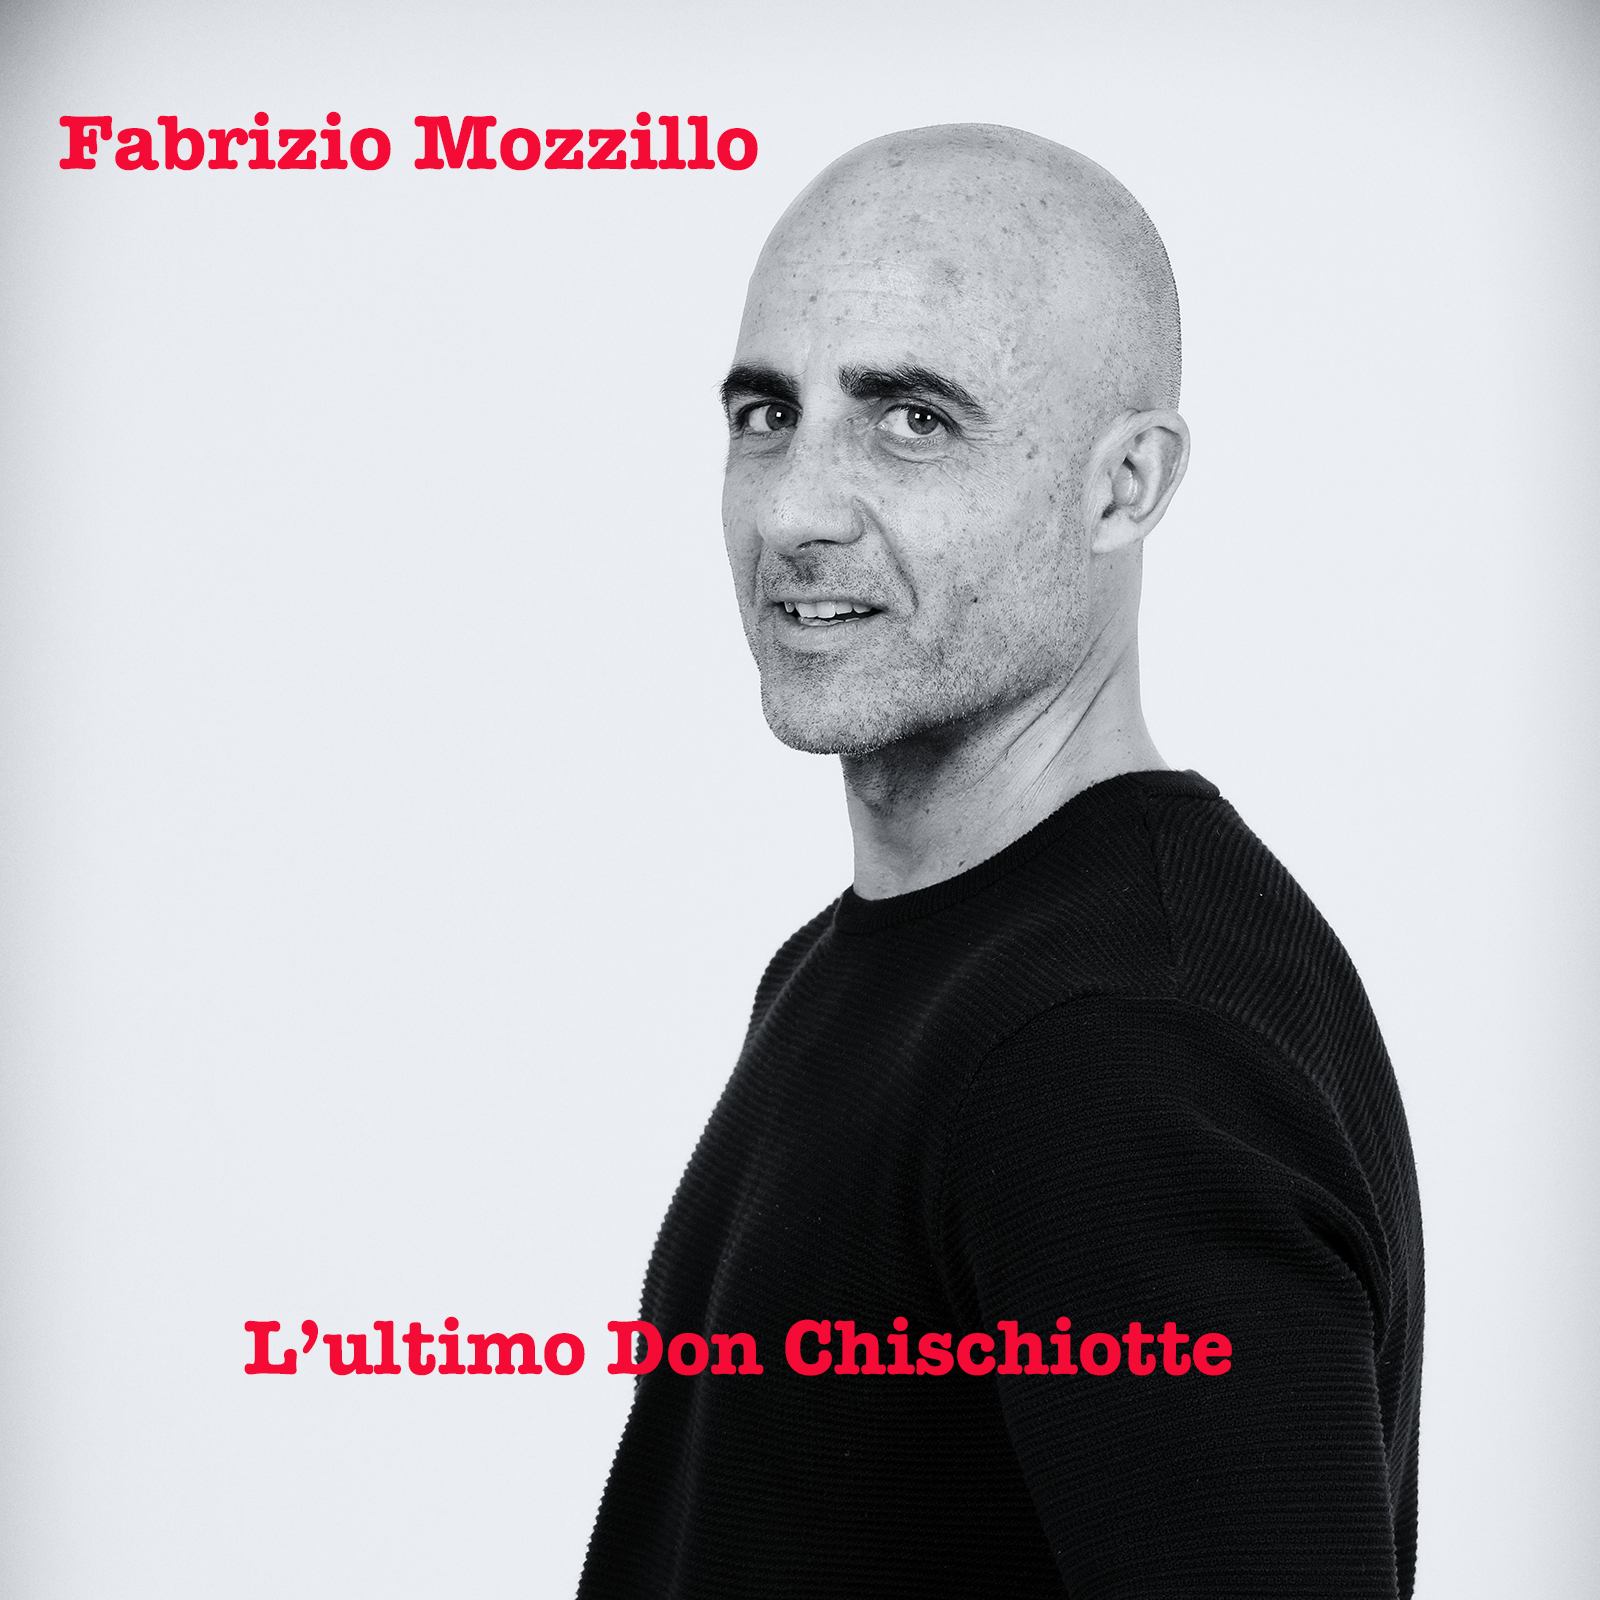 Al momento stai visualizzando “L’ultimo Don Chisciotte”,il secondo singolo di Fabrizio Mozzillo